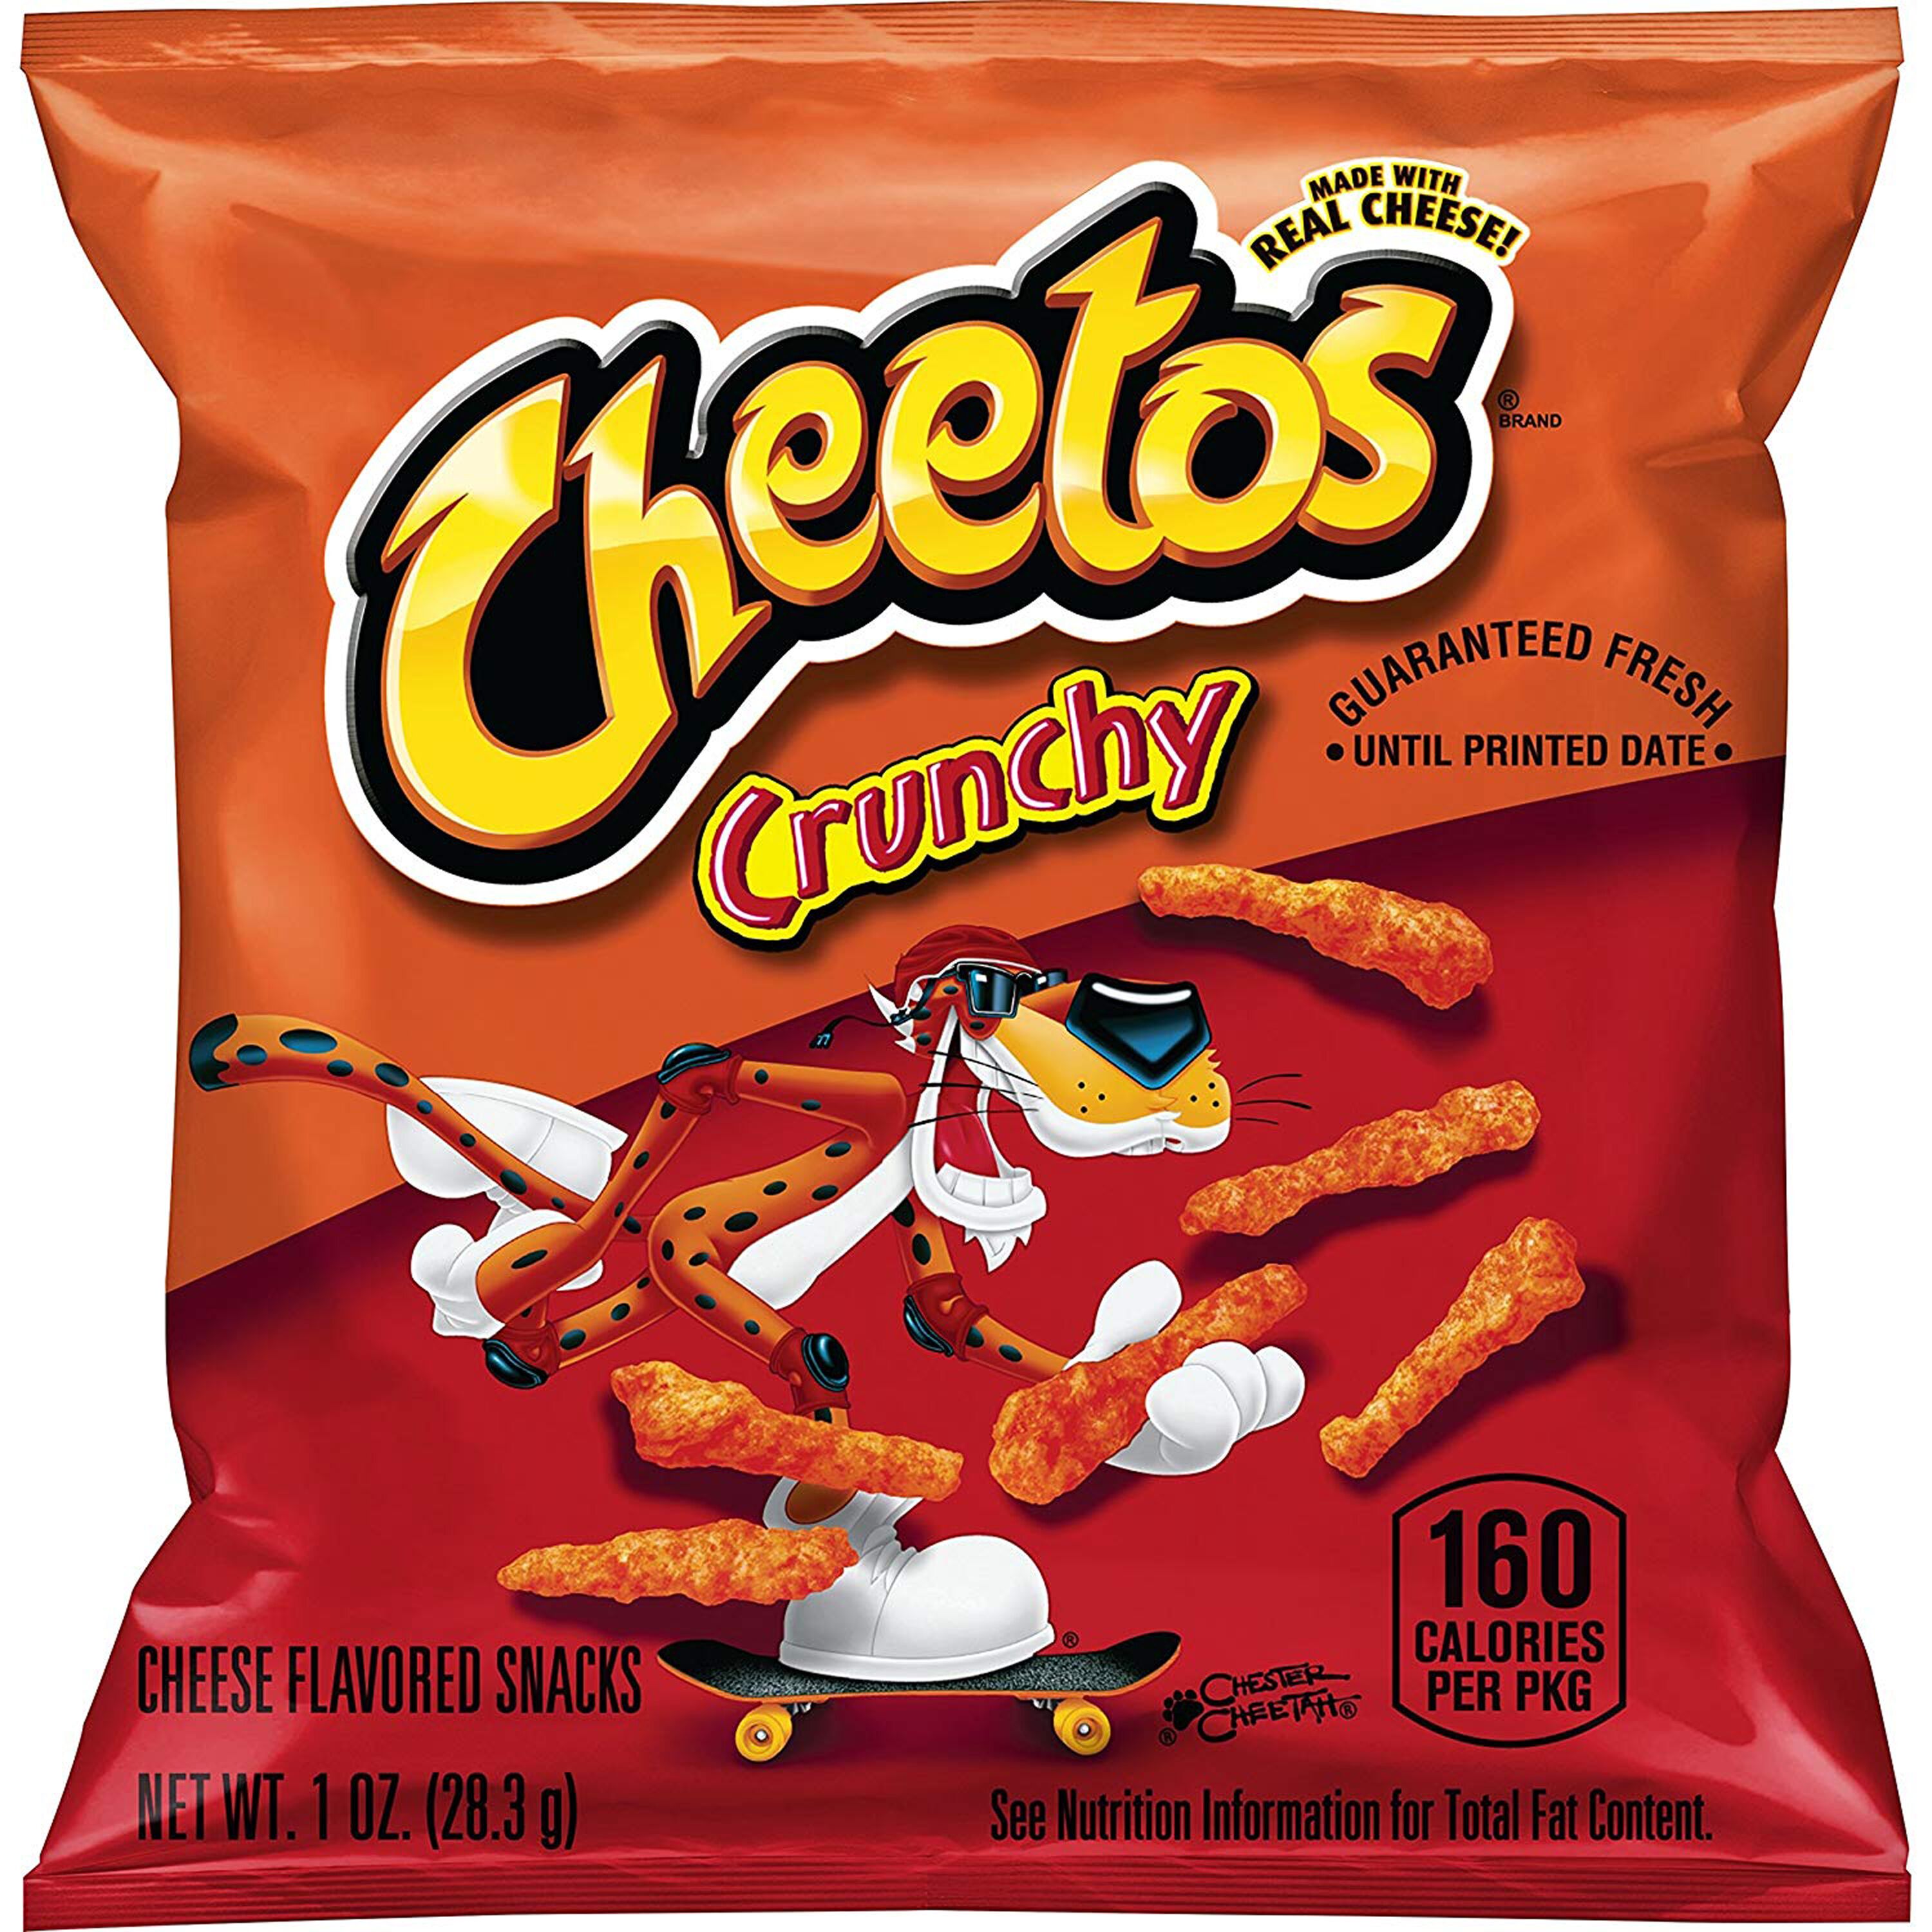 Cheetos Flamin' Hot – Diamonds n Dust